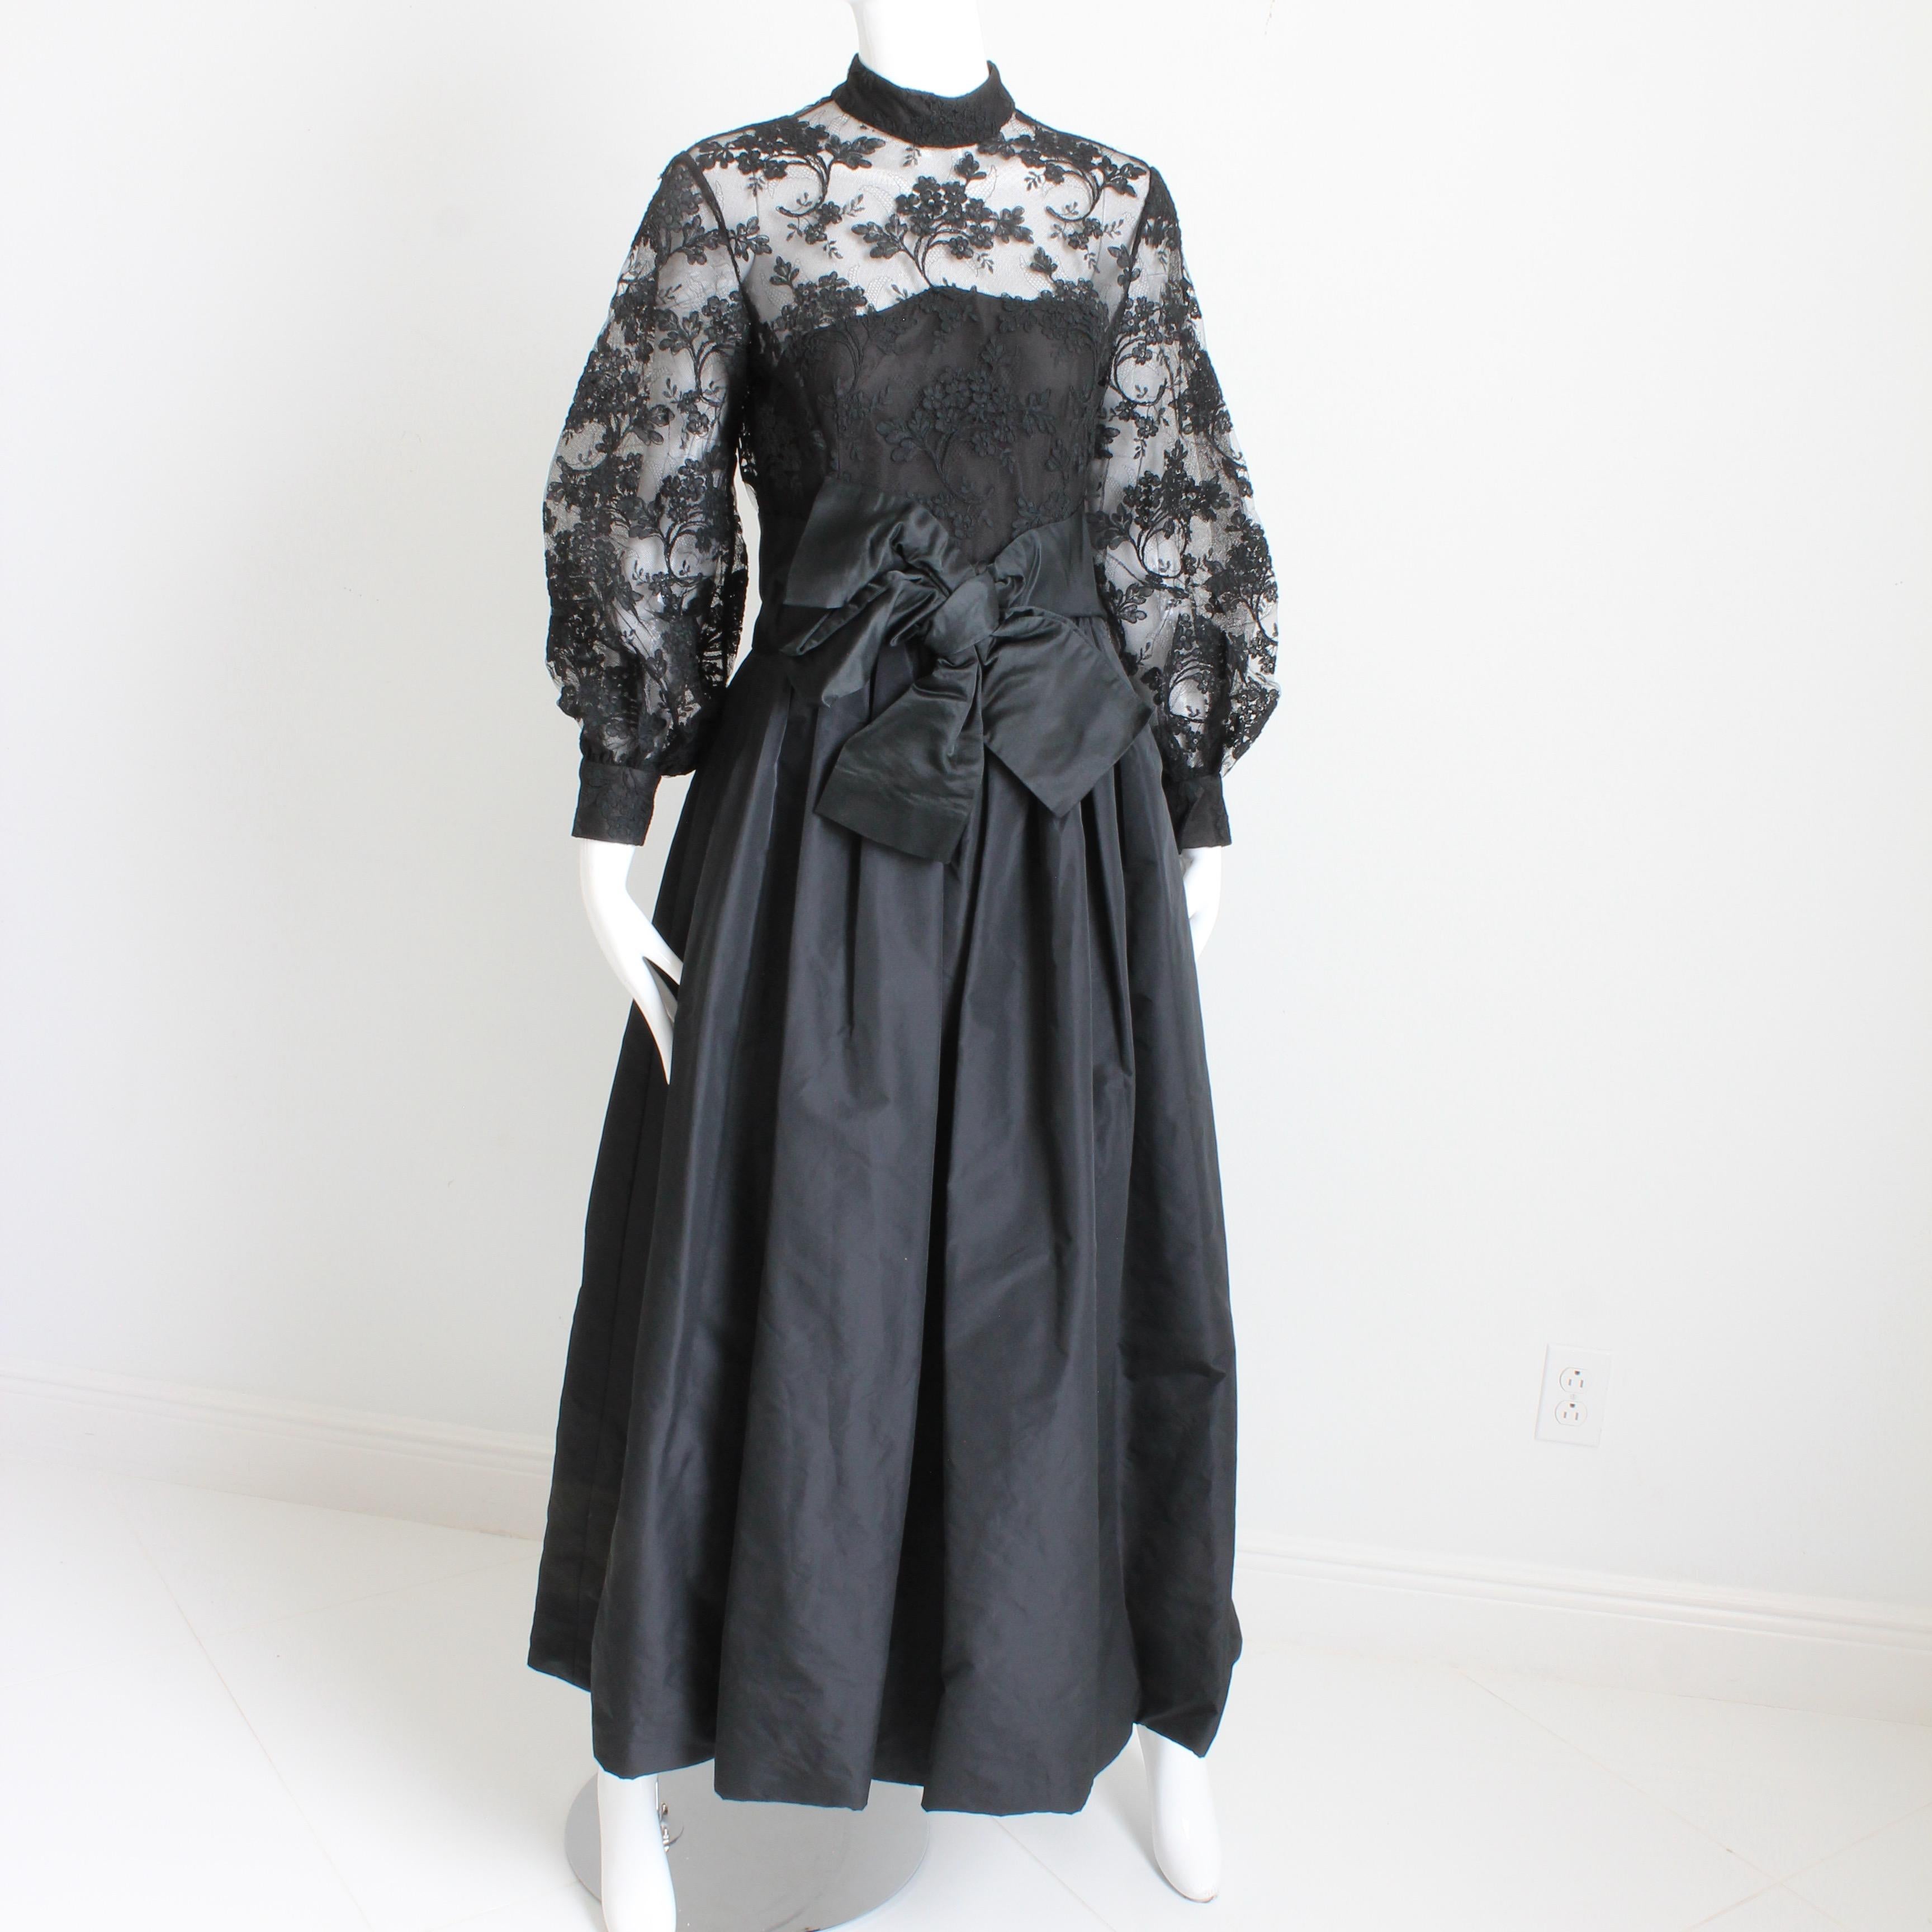 Cette robe du soir en dentelle noire et taffetas a été réalisée par Ronald Amey dans les années 1970 et est absolument magnifique.  Le corsage est orné de dentelle florale noire avec un filet en dessous, et la jupe froncée est faite de ce qui semble